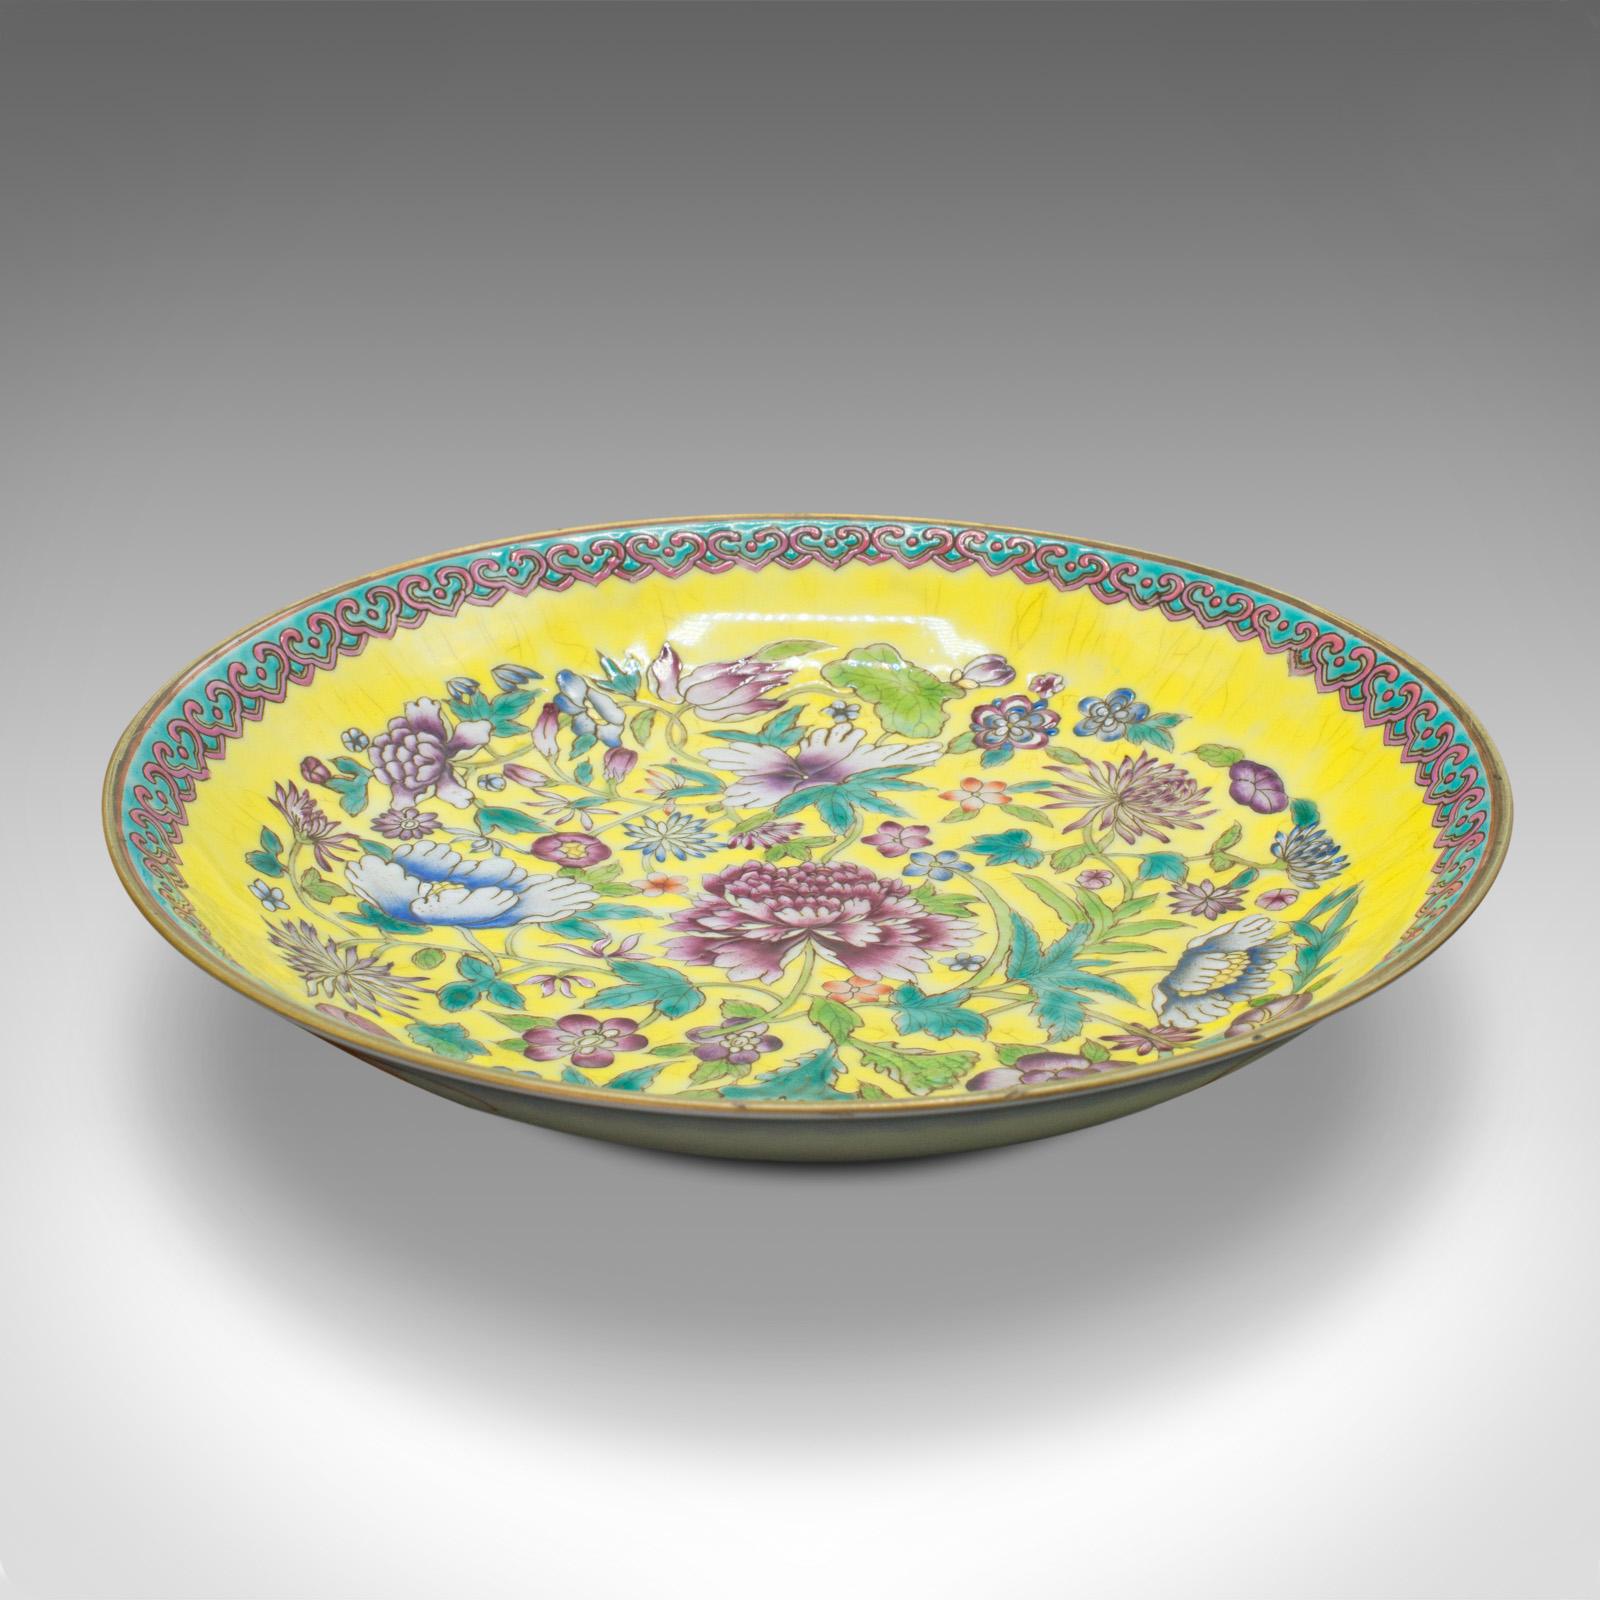 Il s'agit d'un ancien plat décoratif de la Famille Jaune. Assiette chinoise en céramique datant de la fin de la période victorienne, vers 1900.

Une palette délicieusement vibrante pour ce plat attrayant.
Elle présente une patine d'ancienneté